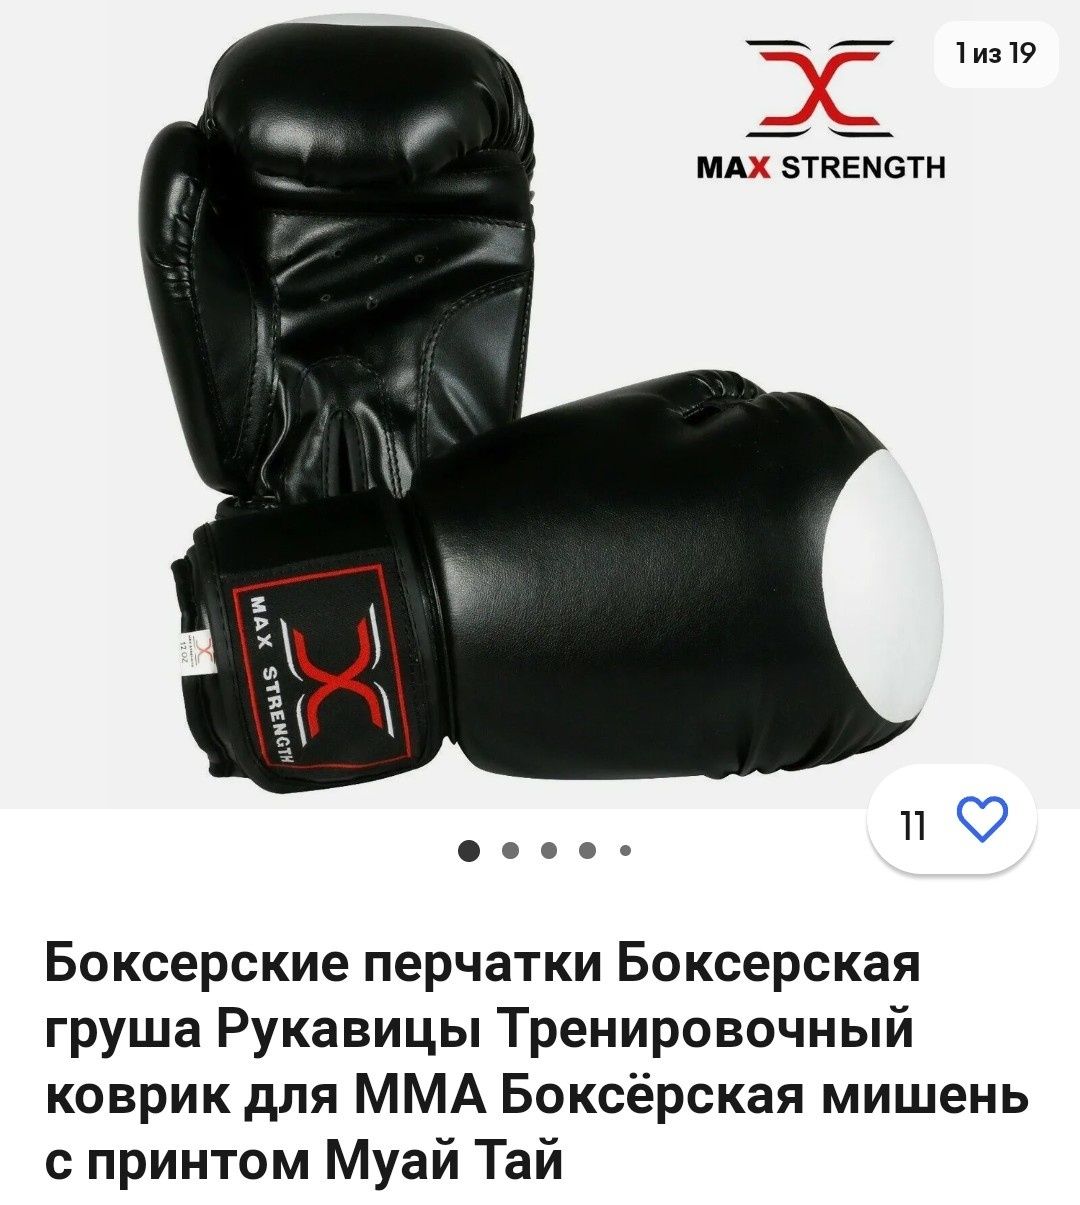 Боксерський рукавички з принтом Муай Тай. Бренд  Макстренгт